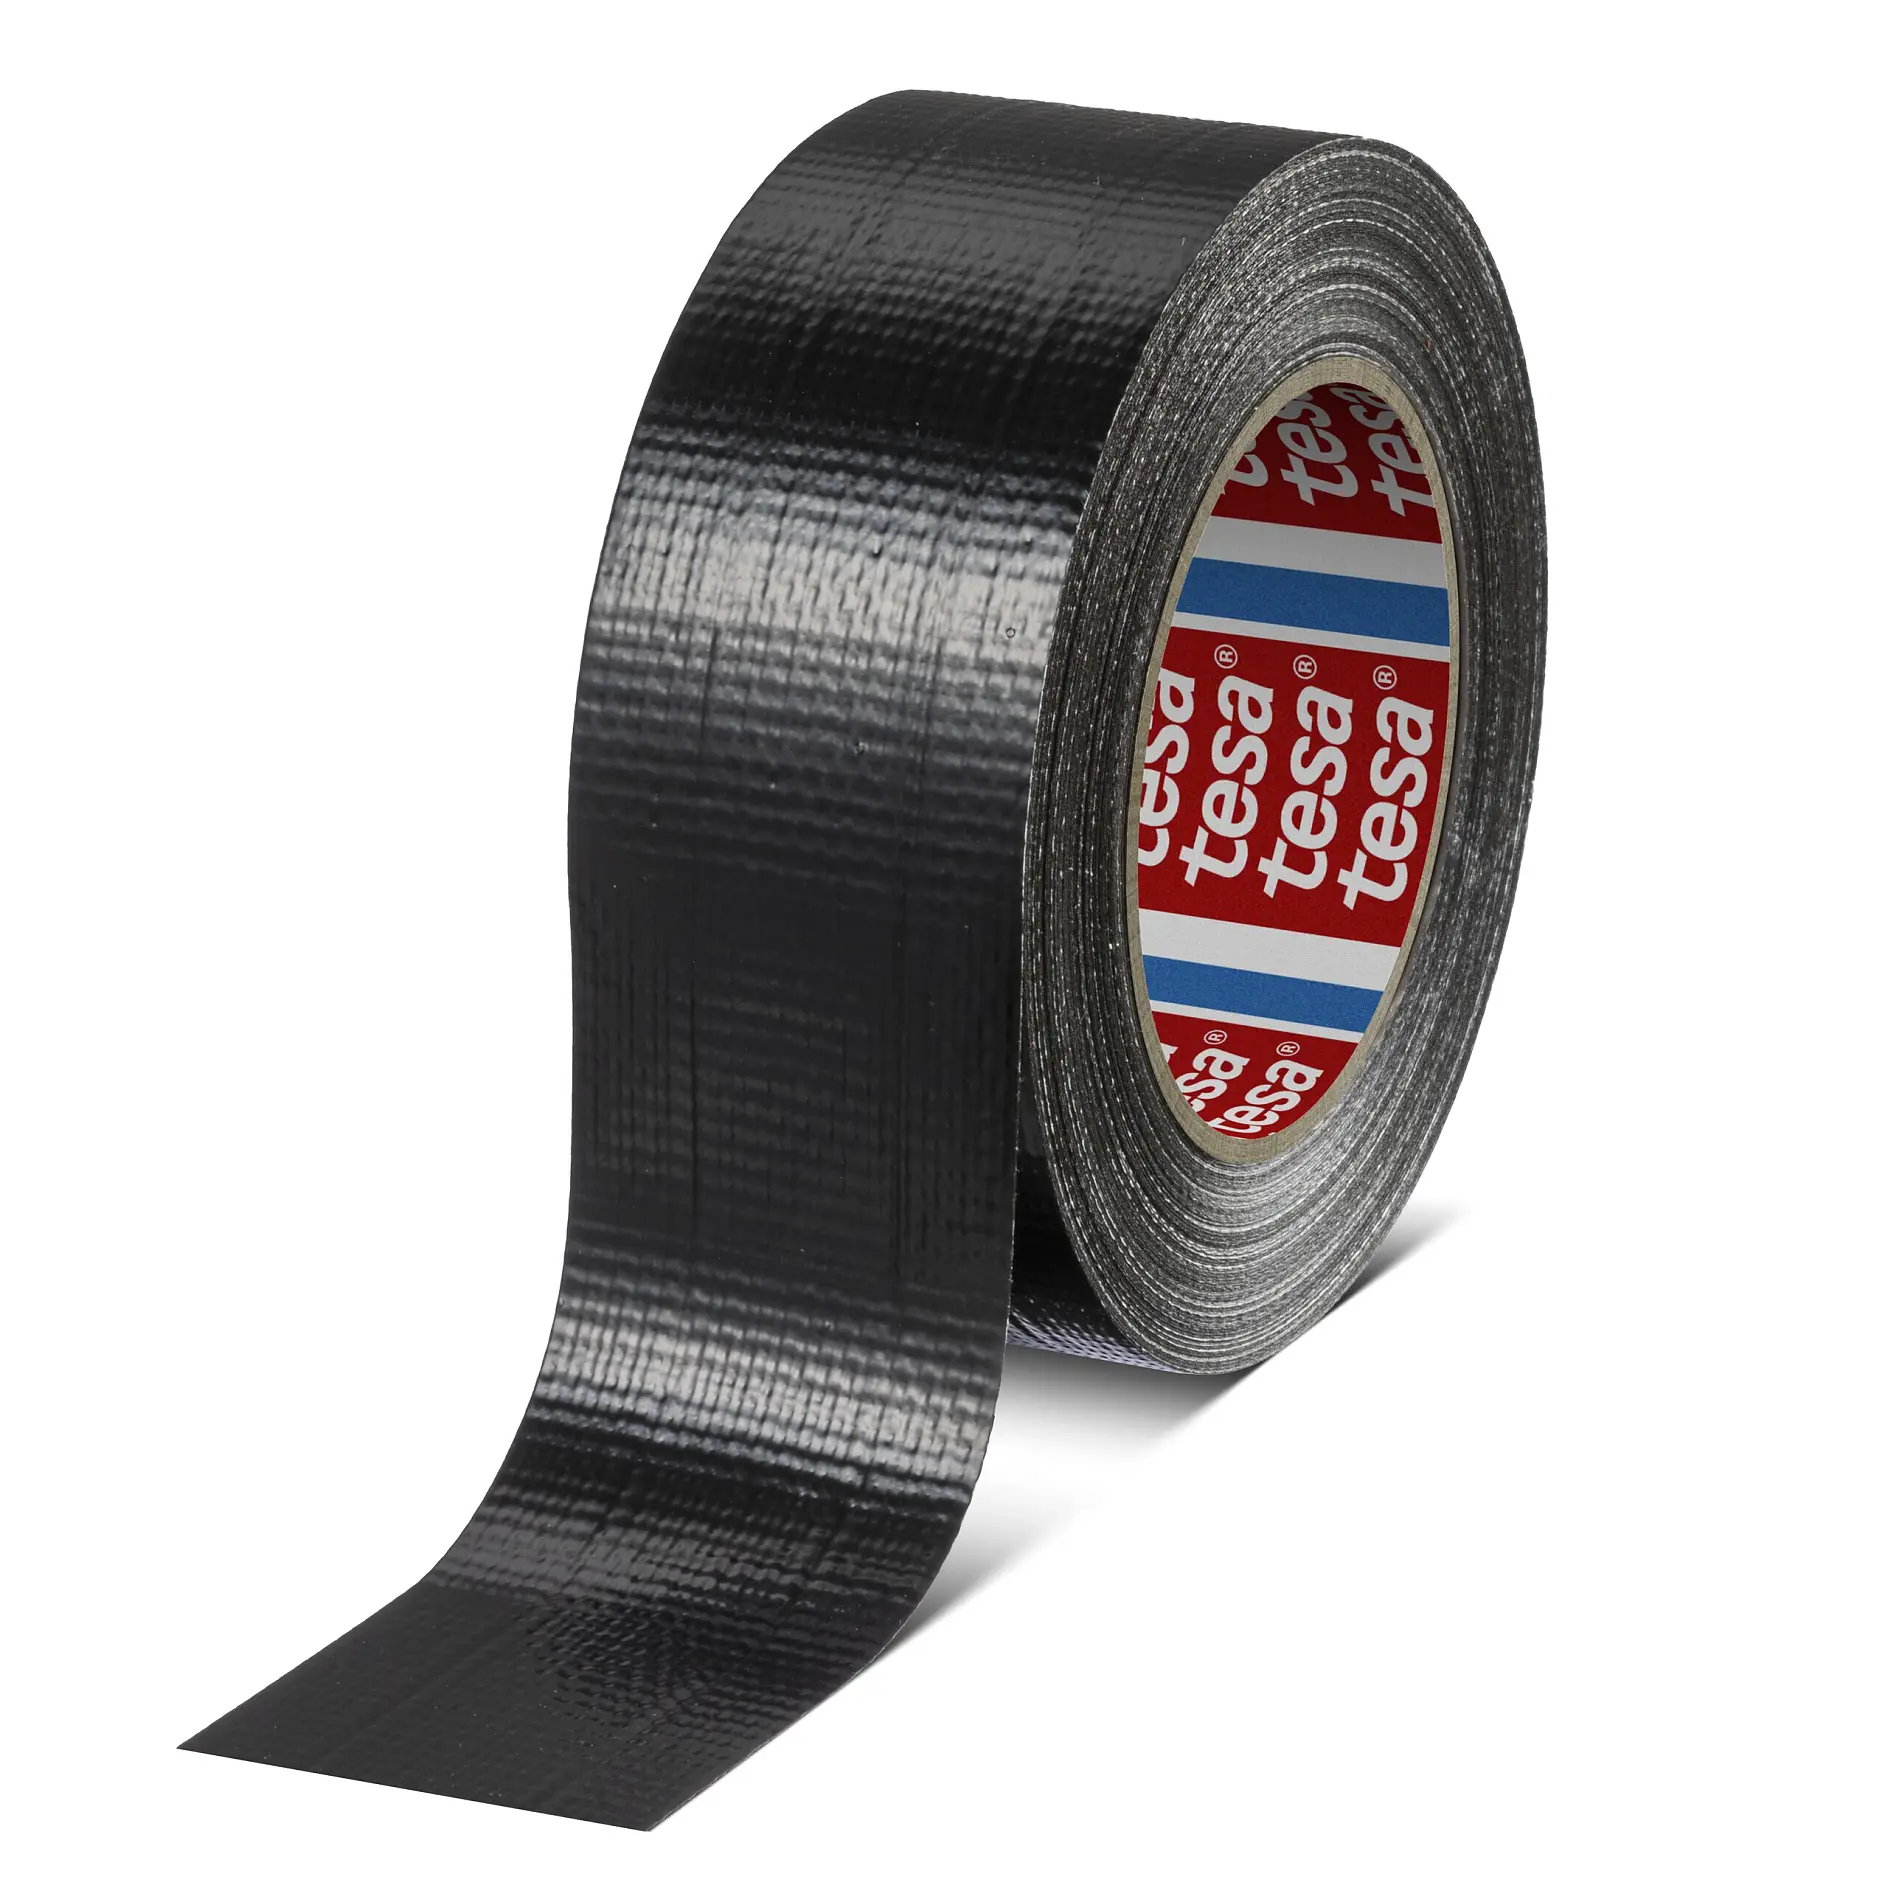 tesa-04615-general-purpose-duct-tape-black-046150000100-pr